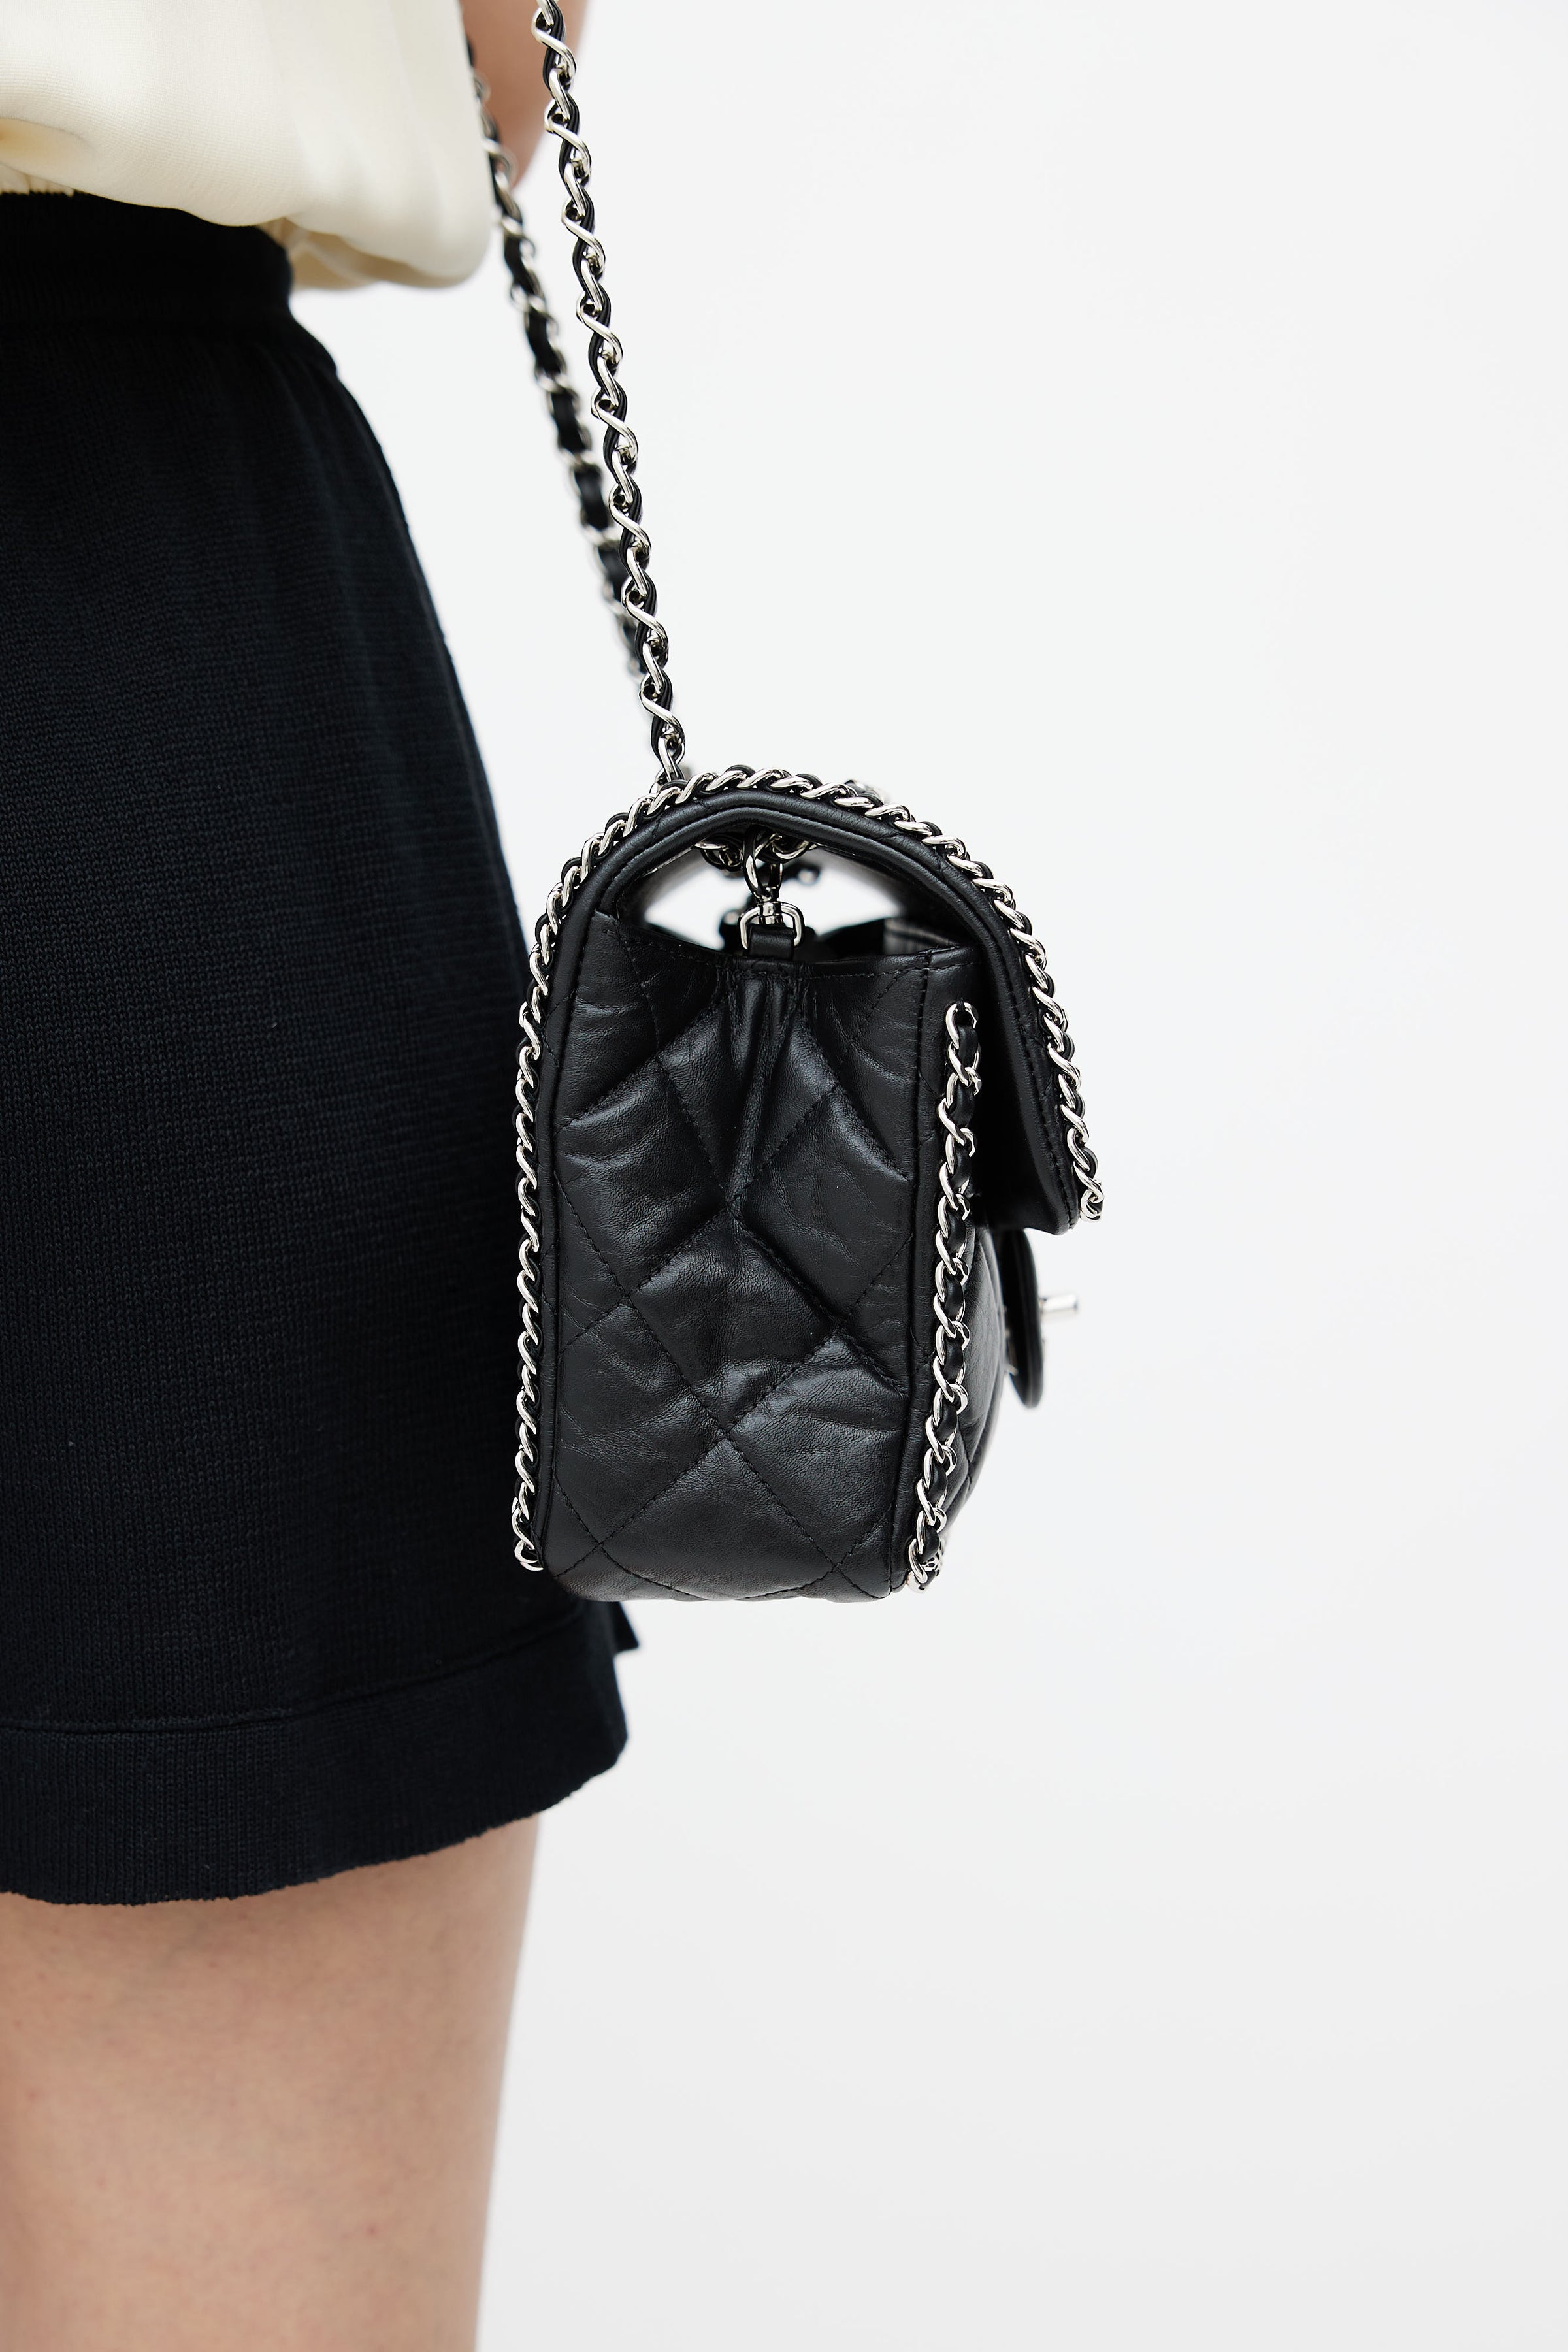 Chanel Quilted Cc Vintage Flap Bag Chain Shoulder Bag Calfskin